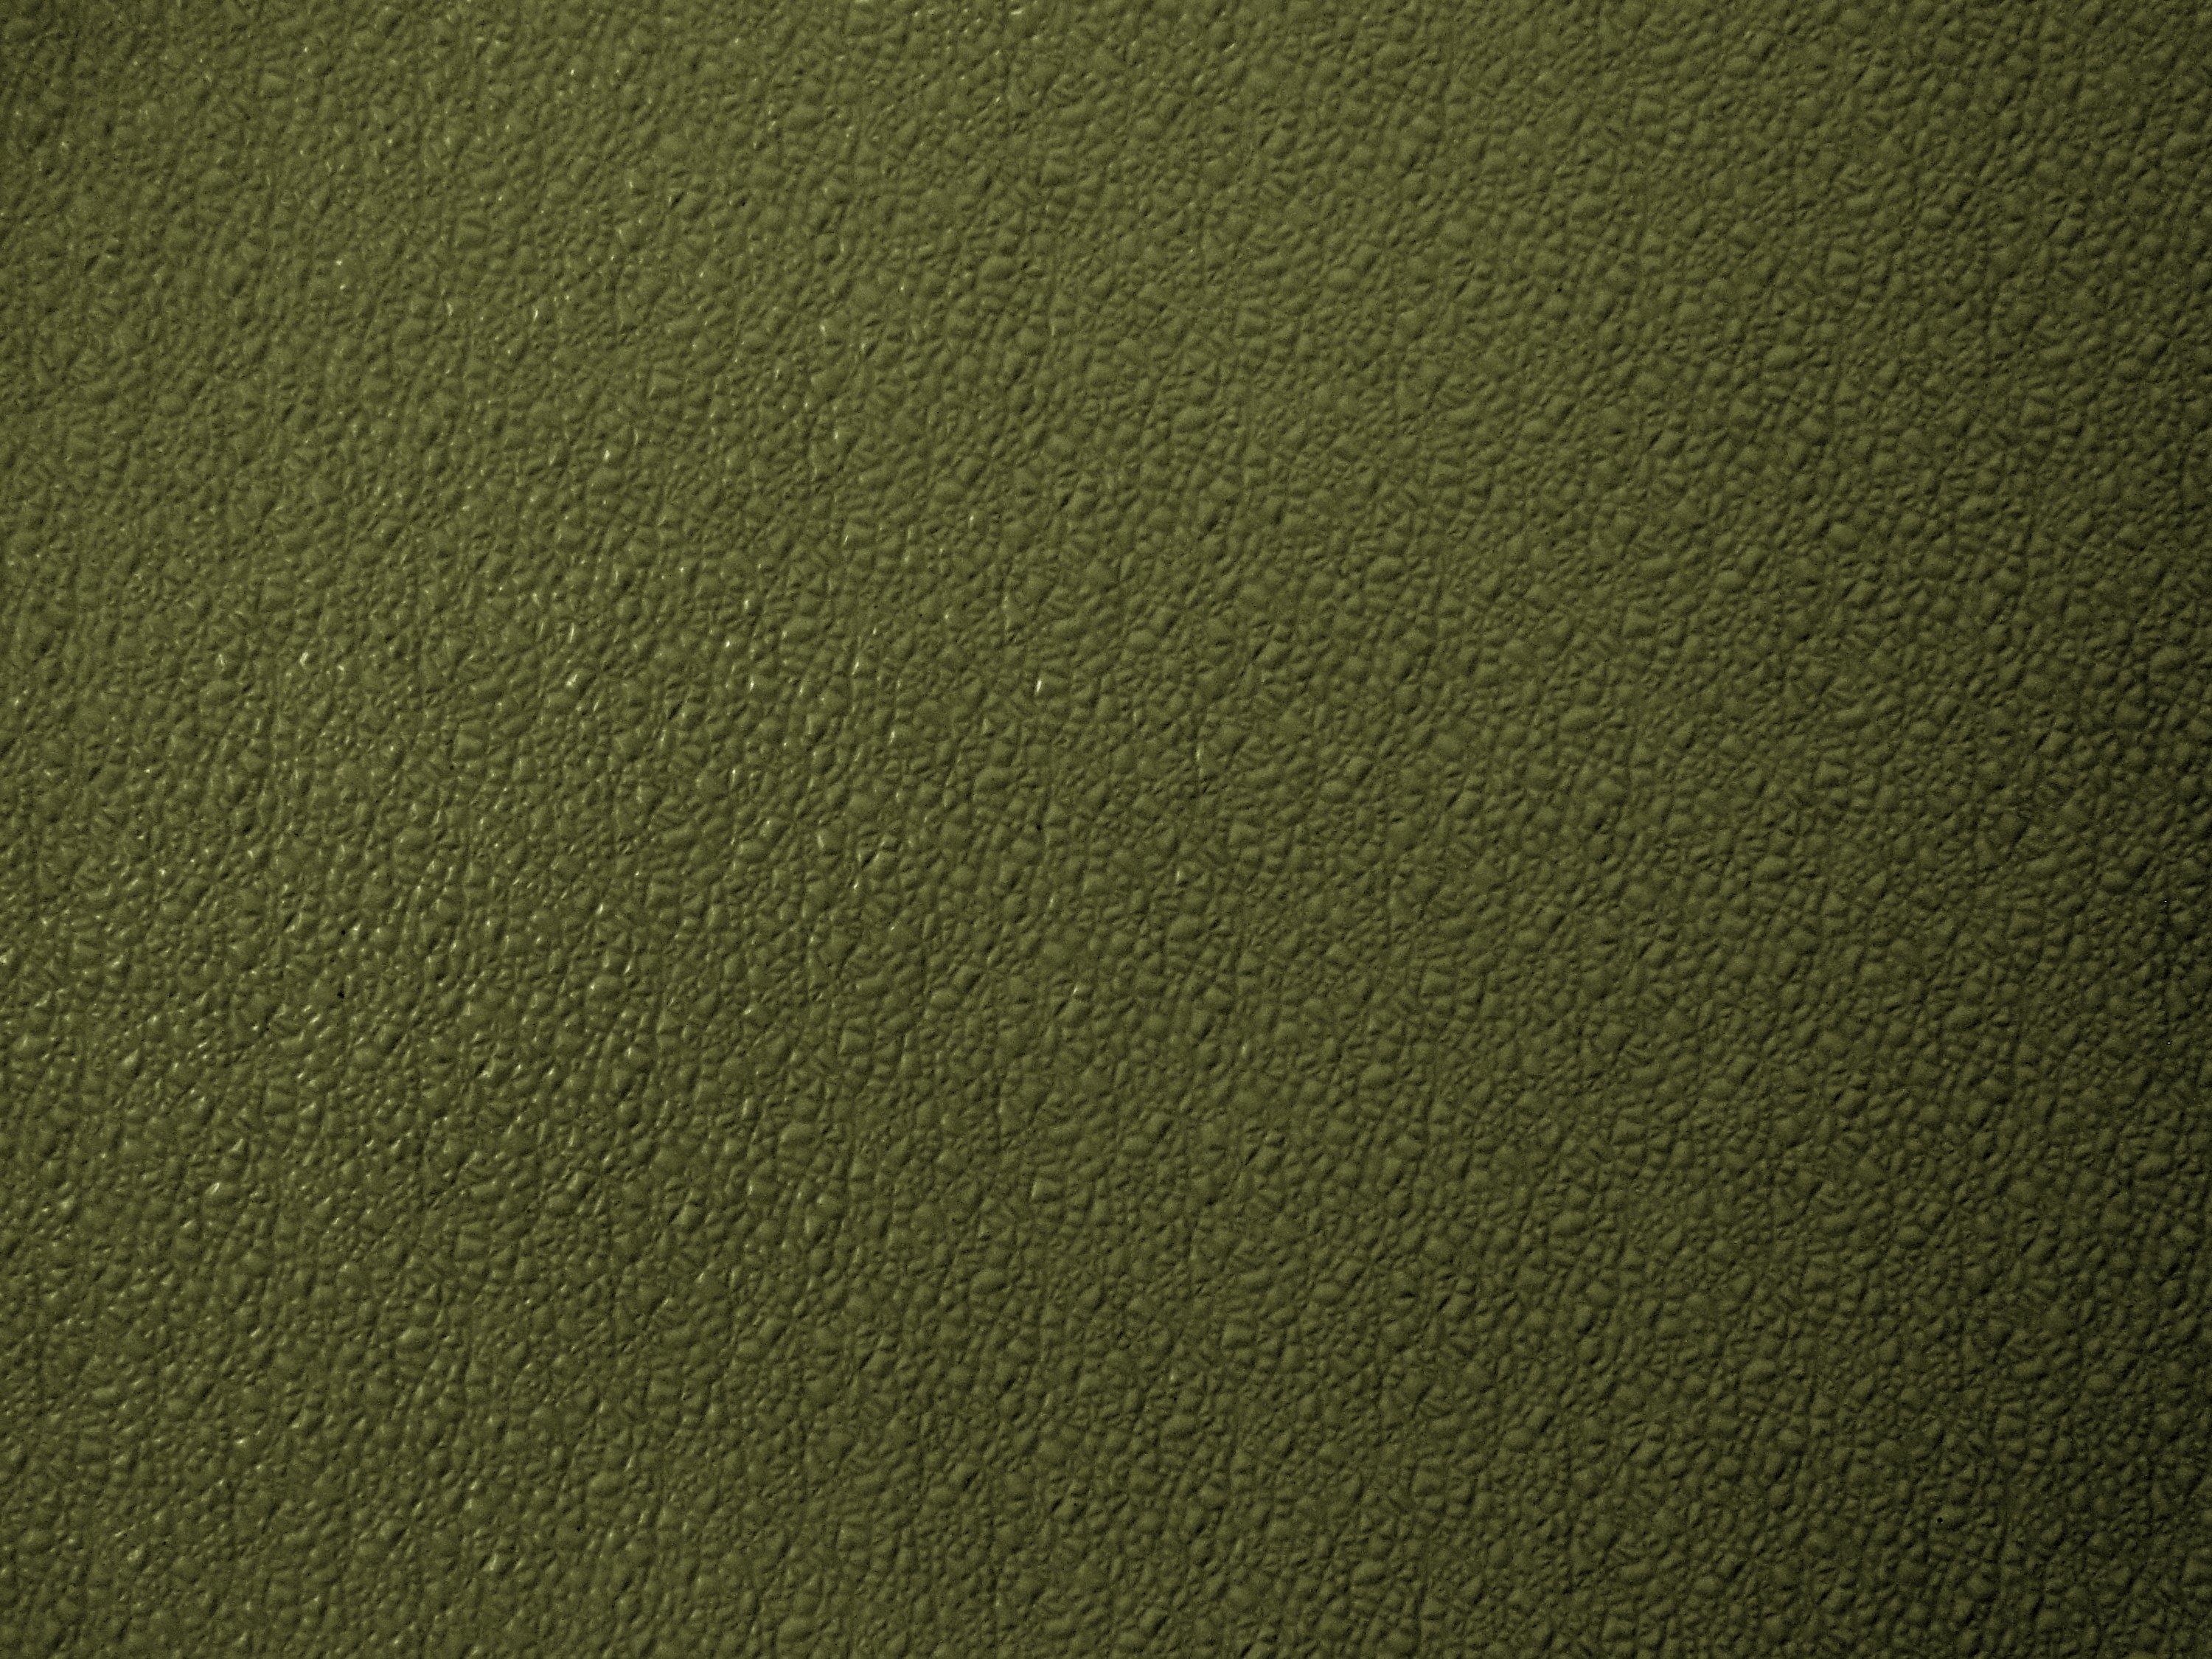 オリーブグリーンの壁紙,緑,褐色,金属,レザー